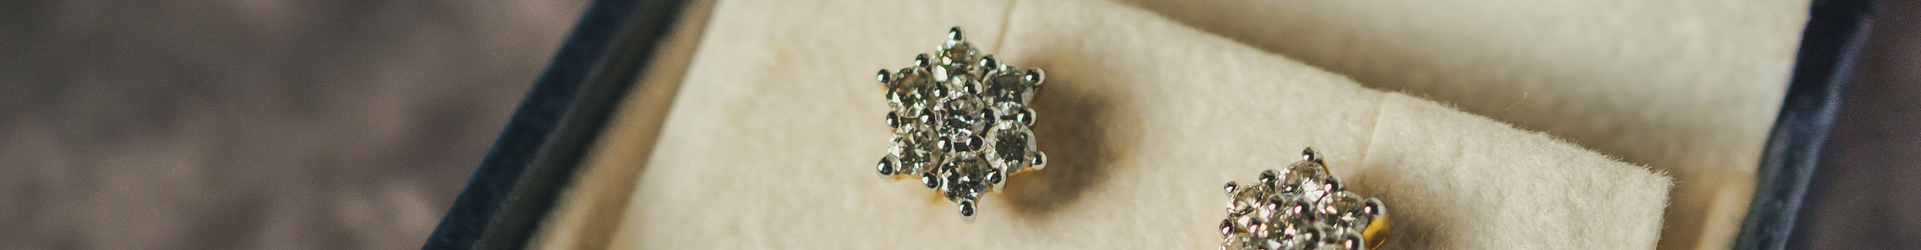 close up of diamond stud earrings